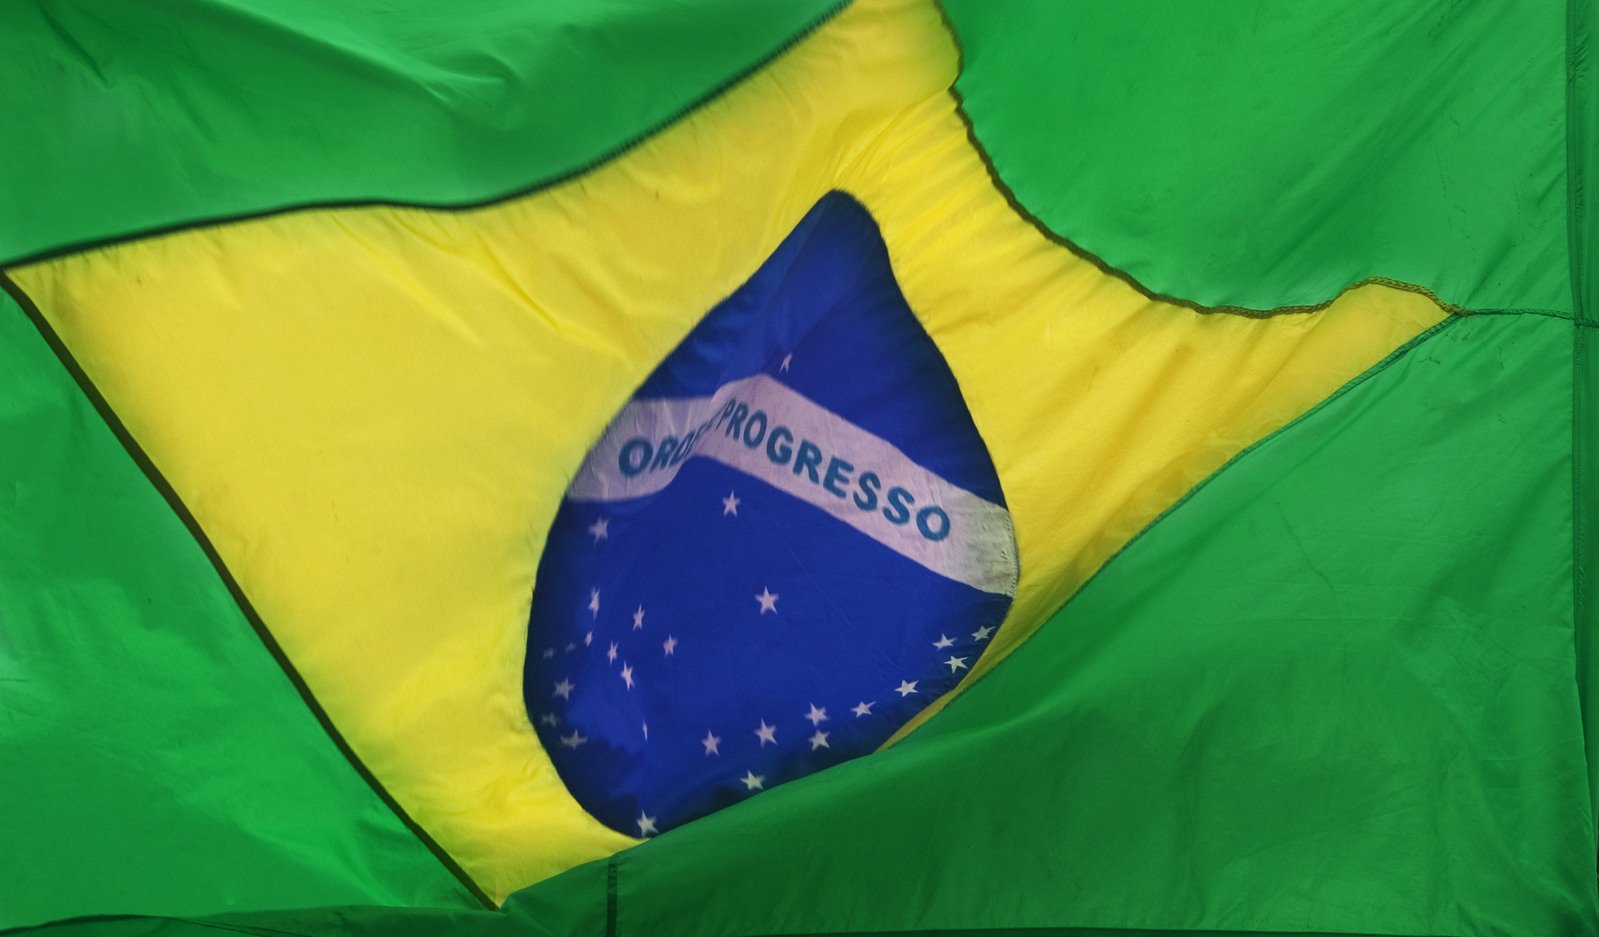 C-bond: entenda como funcionava esse título da dívida pública brasileira